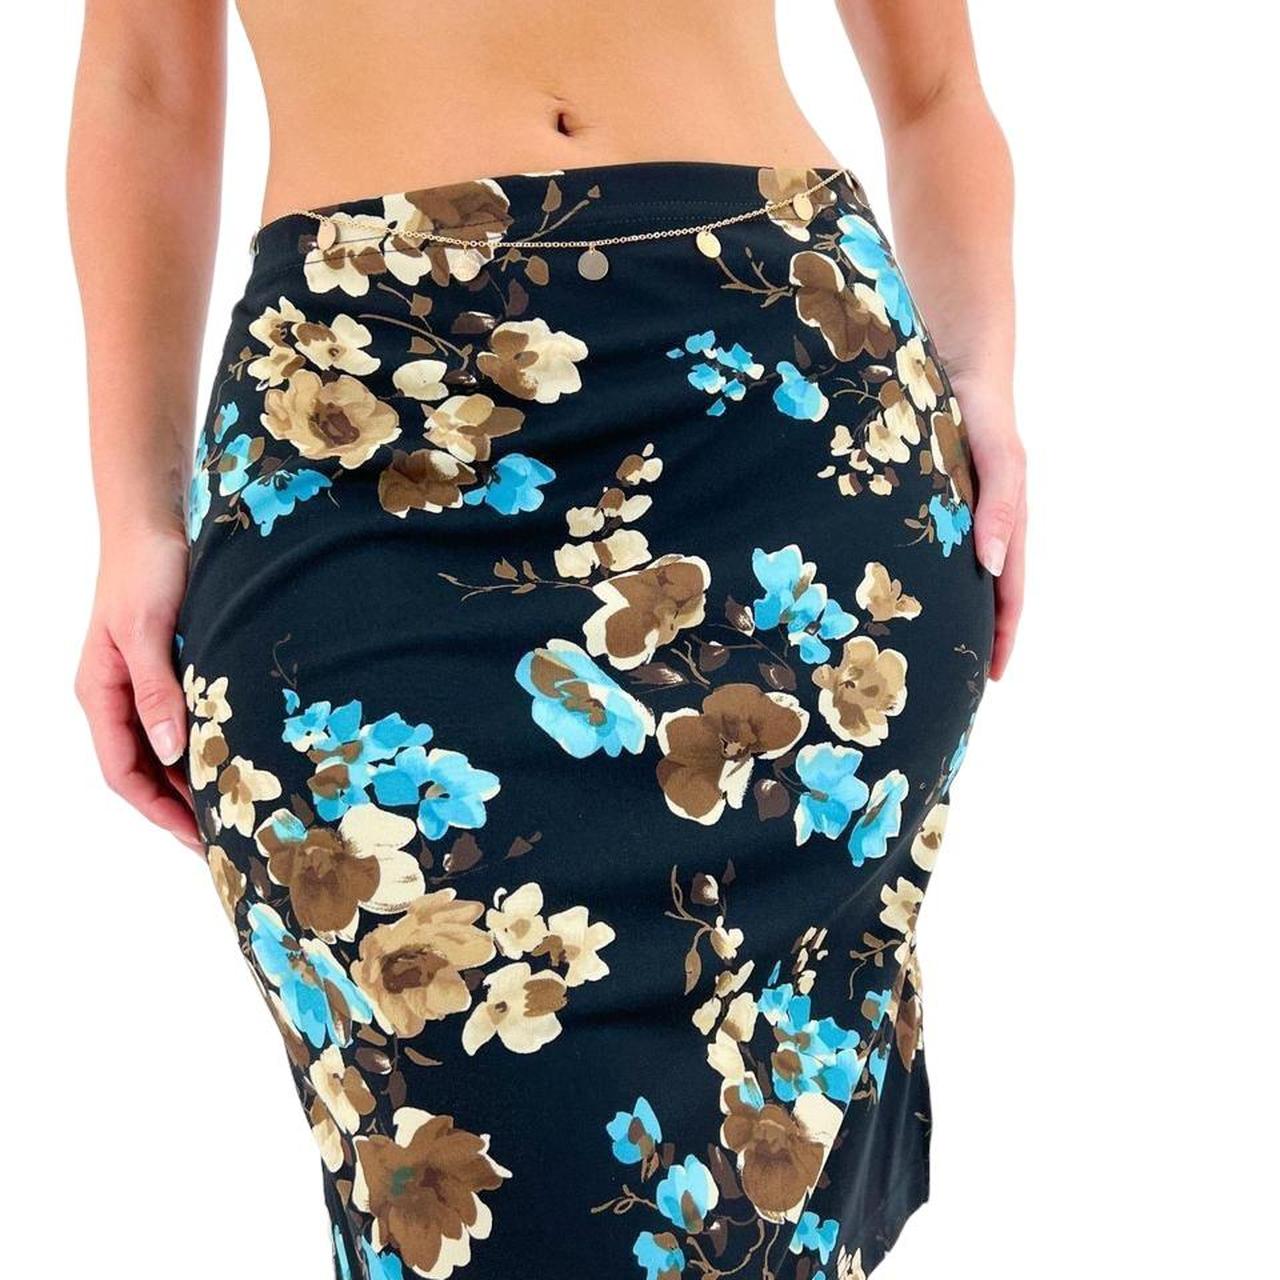 90s Vintage Black + Blue Floral Print Stretchy Skirt w/ Side Slit [M]